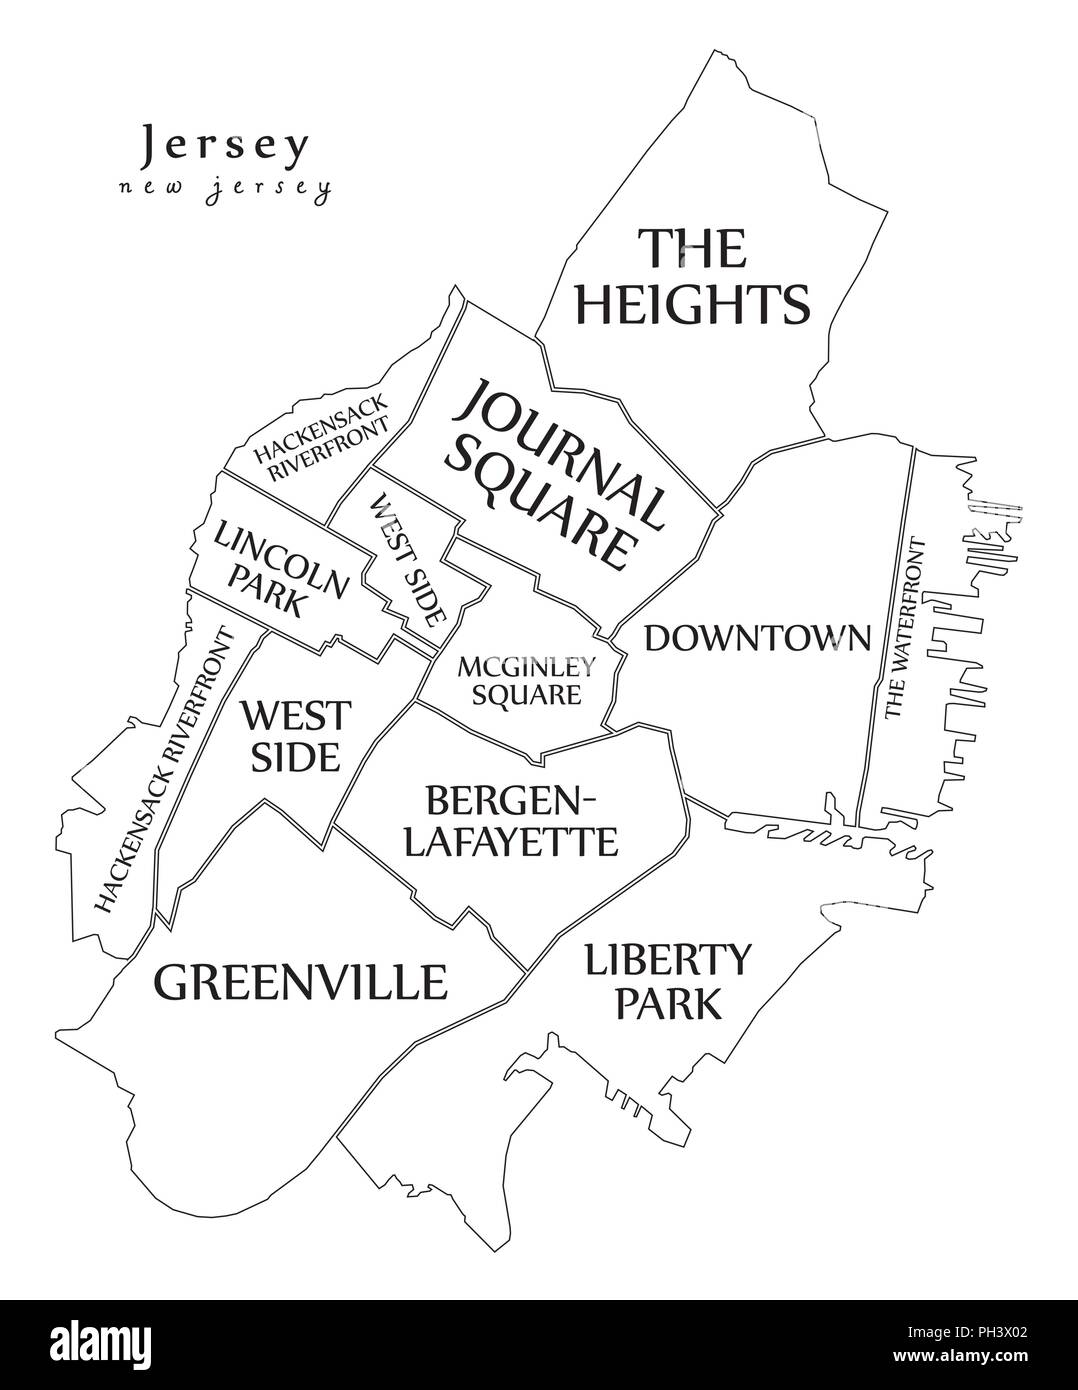 Ciudad moderna - Mapa de la ciudad de Jersey, Nueva Jersey, EE.UU. con los barrios y títulos mapa de esquema Ilustración del Vector